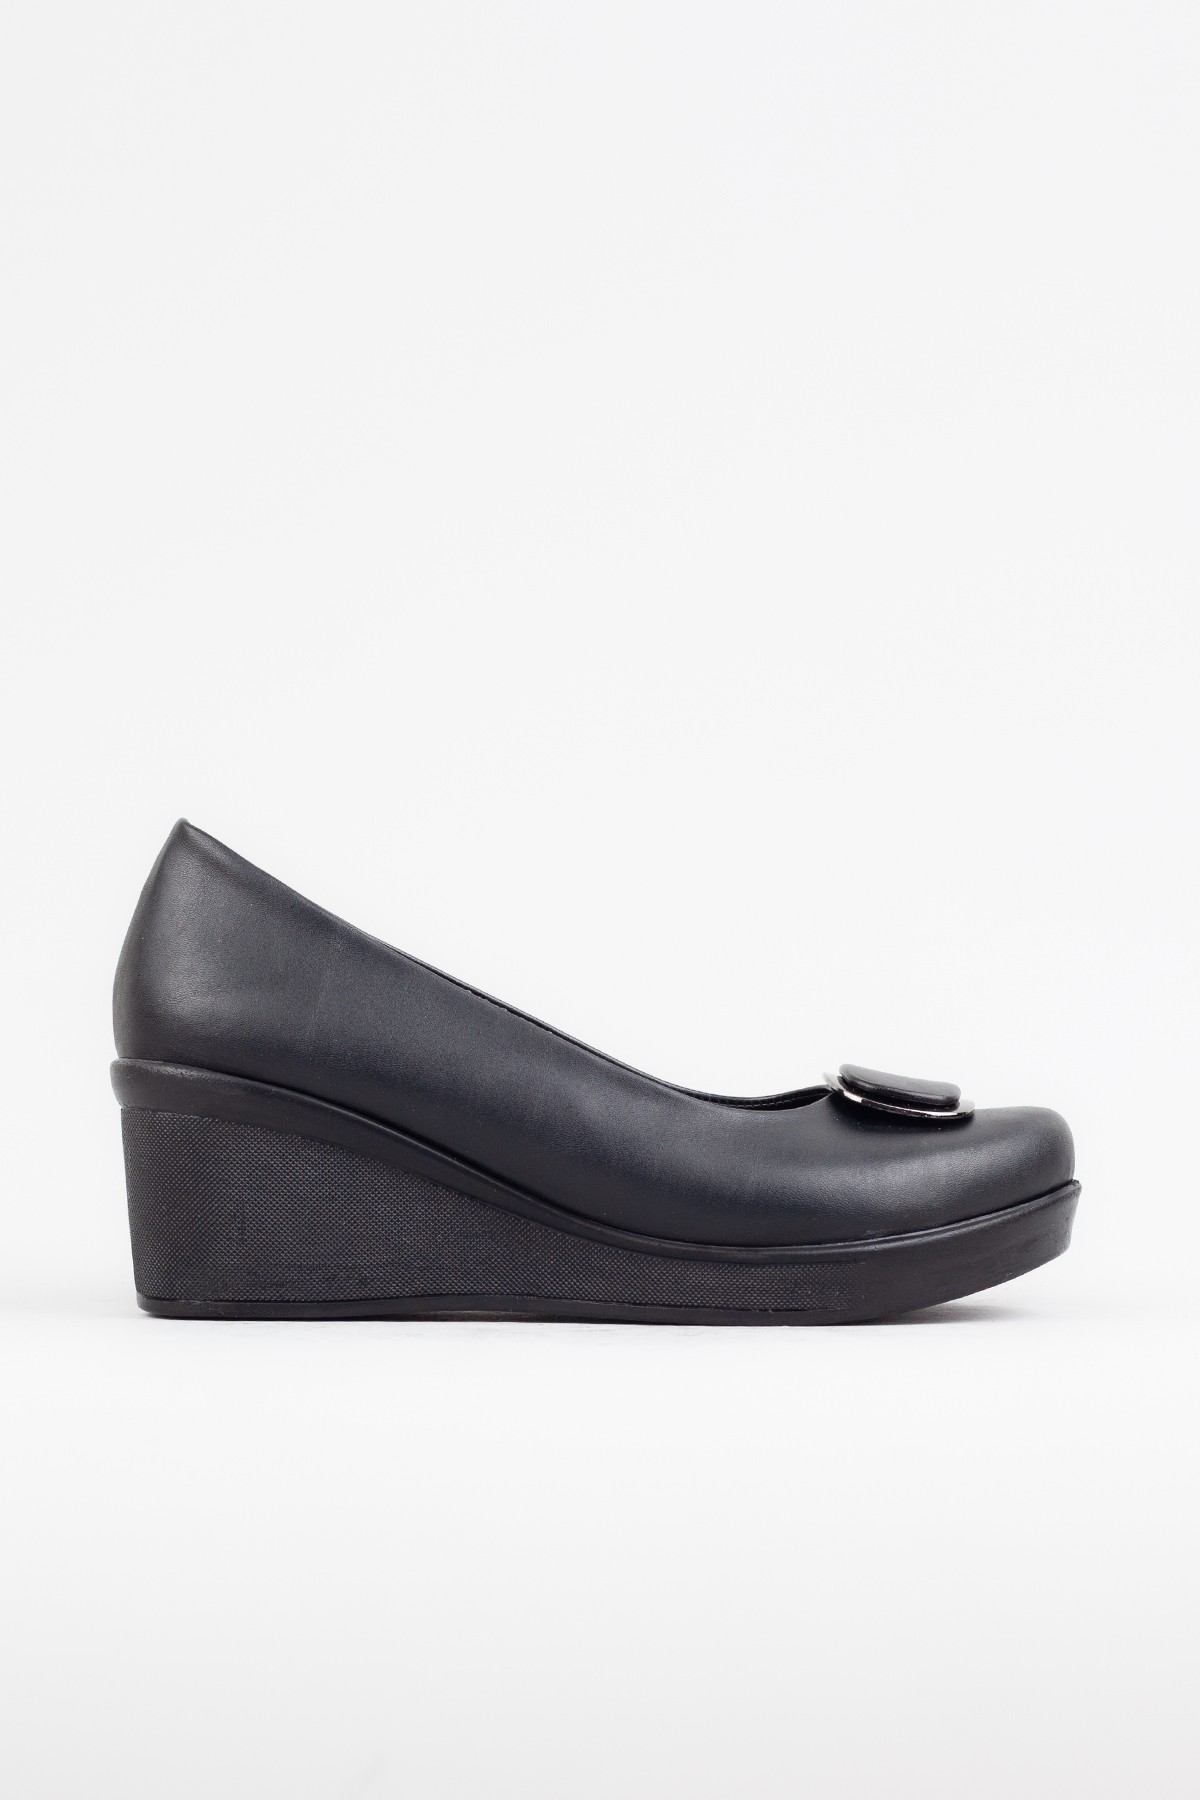 Kadın Siyah Dolgu Topuklu Ayakkabı